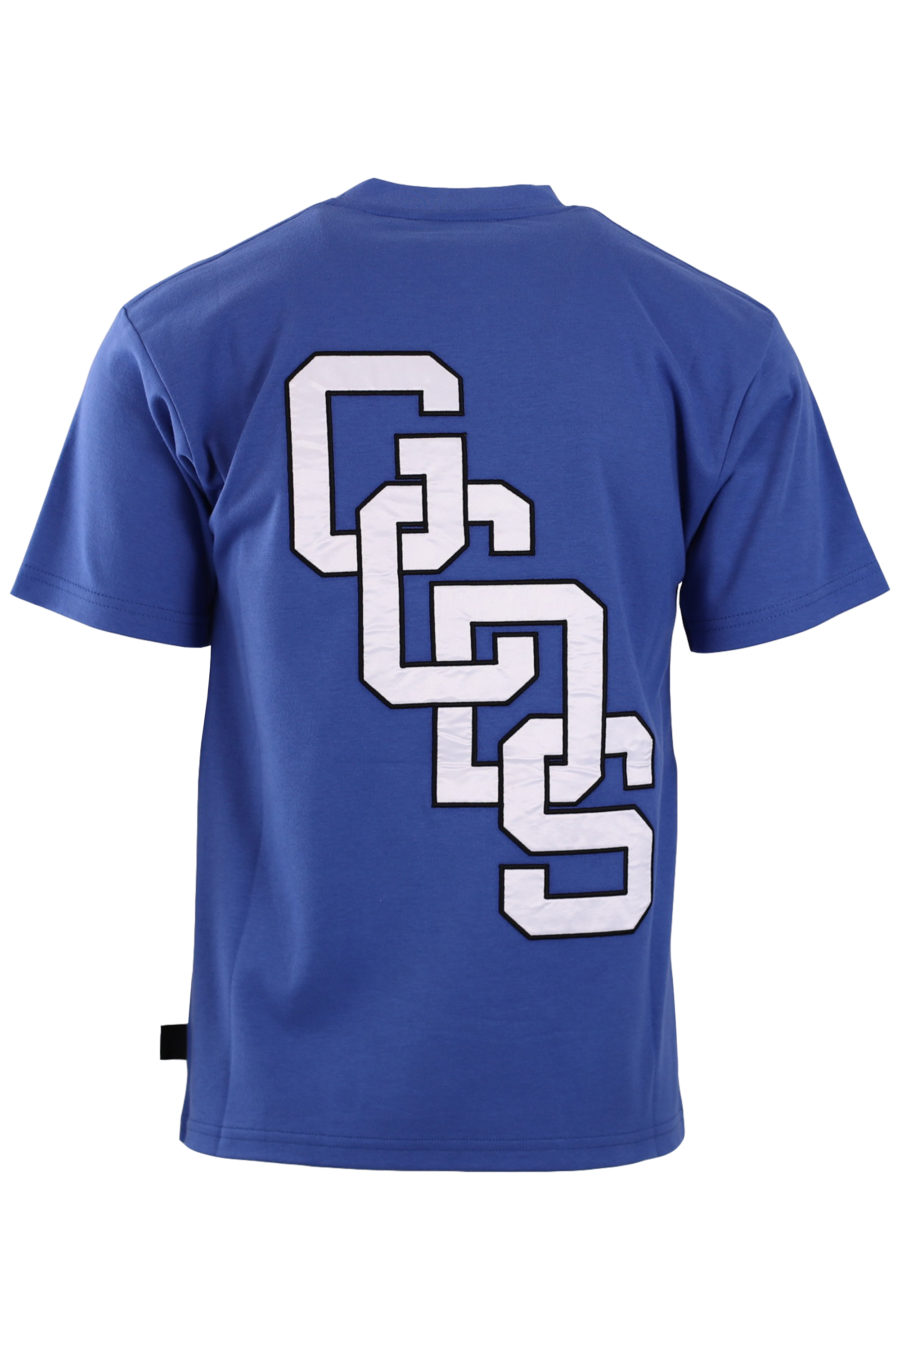 Camiseta azul con logo grande detrás - 57a2bc1797e71e625ee8870dc0392fecf63fcc91